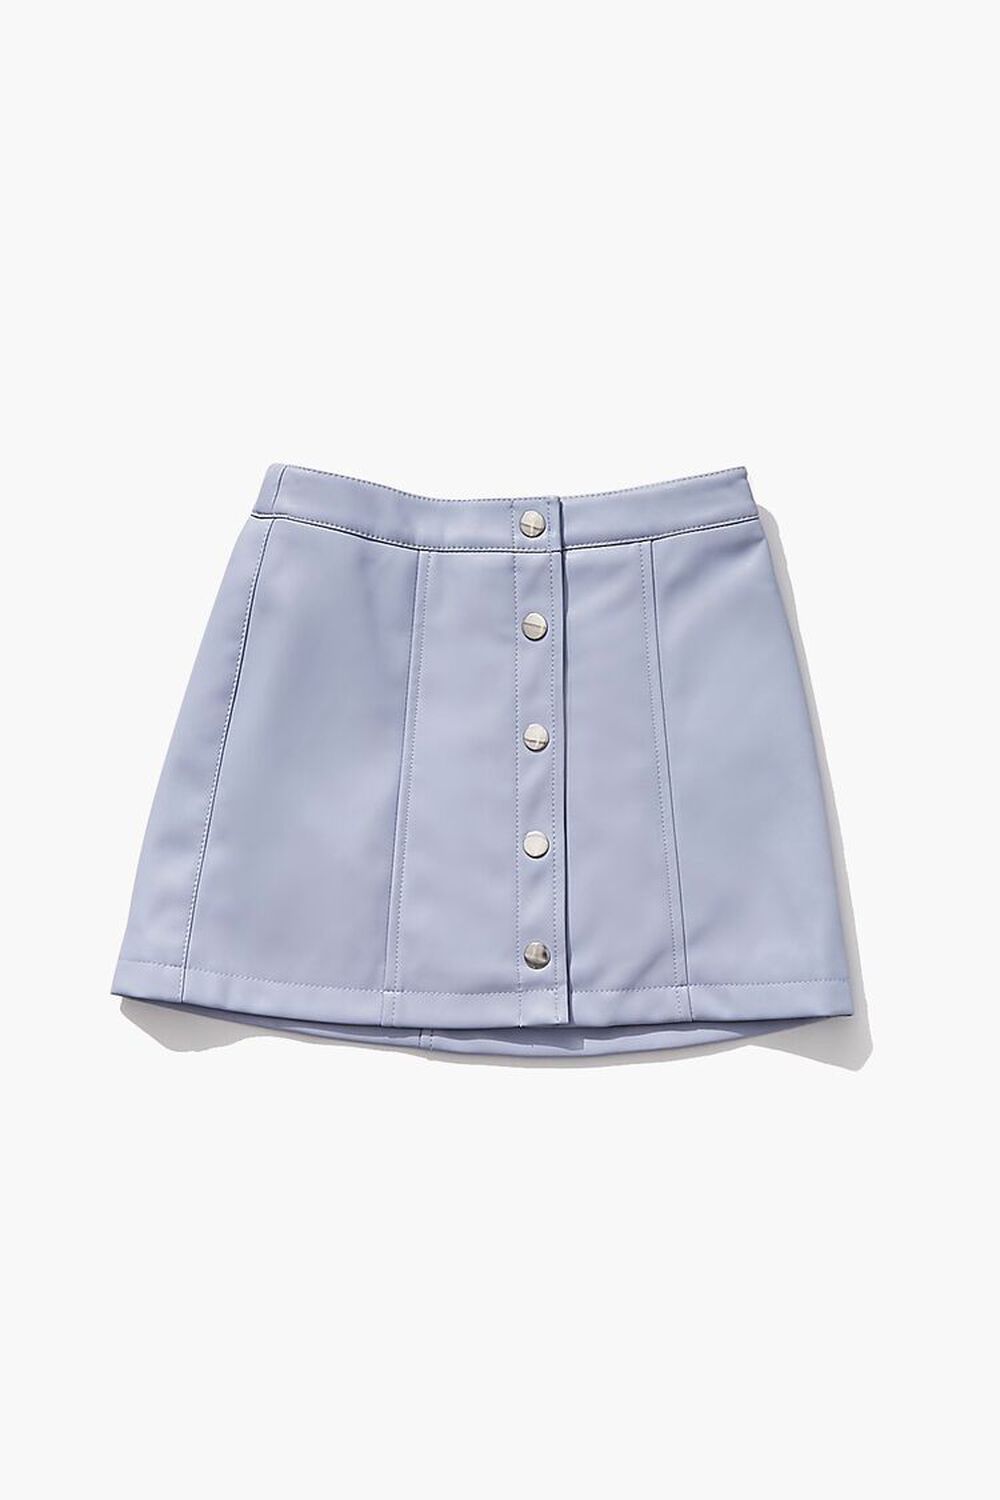 BLUE Girls Button-Front Skirt (Kids), image 1